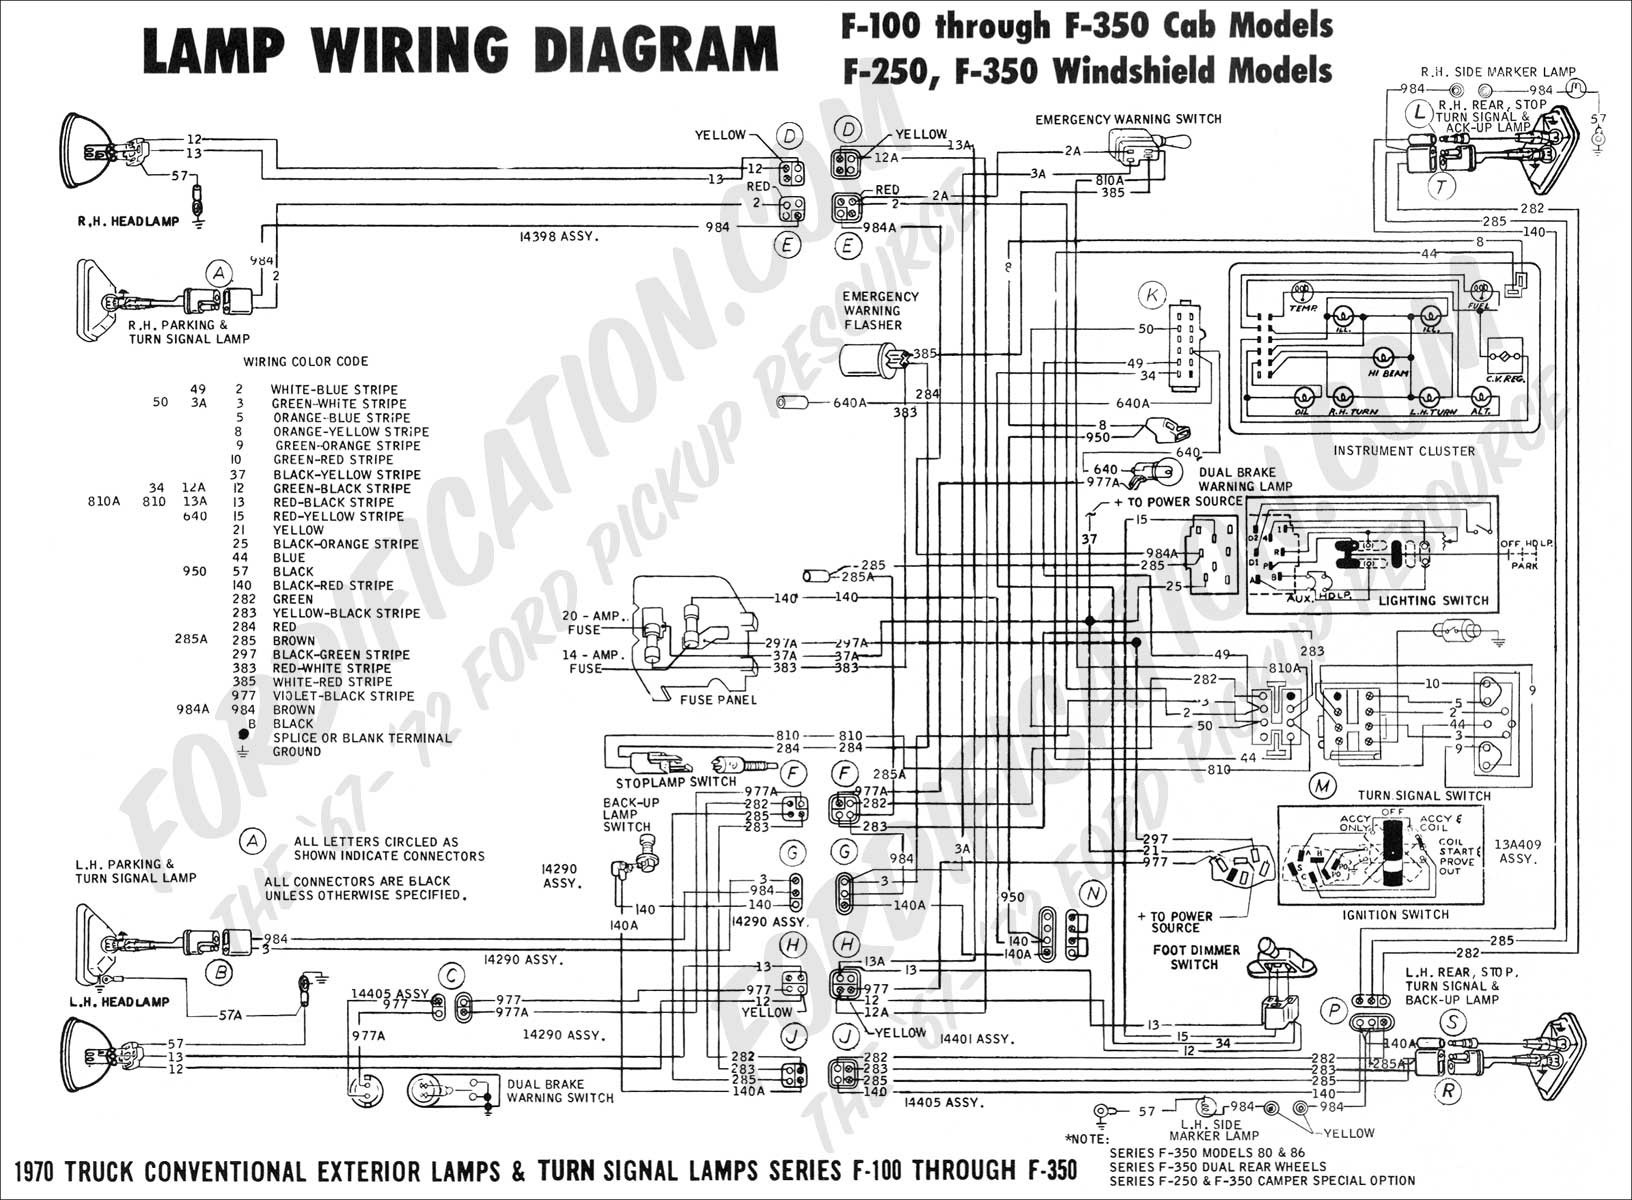 1986 ford F150 Engine Diagram 1990 ford F 150 Wiring Diagram Wiring Diagram Of 1986 ford F150 Engine Diagram